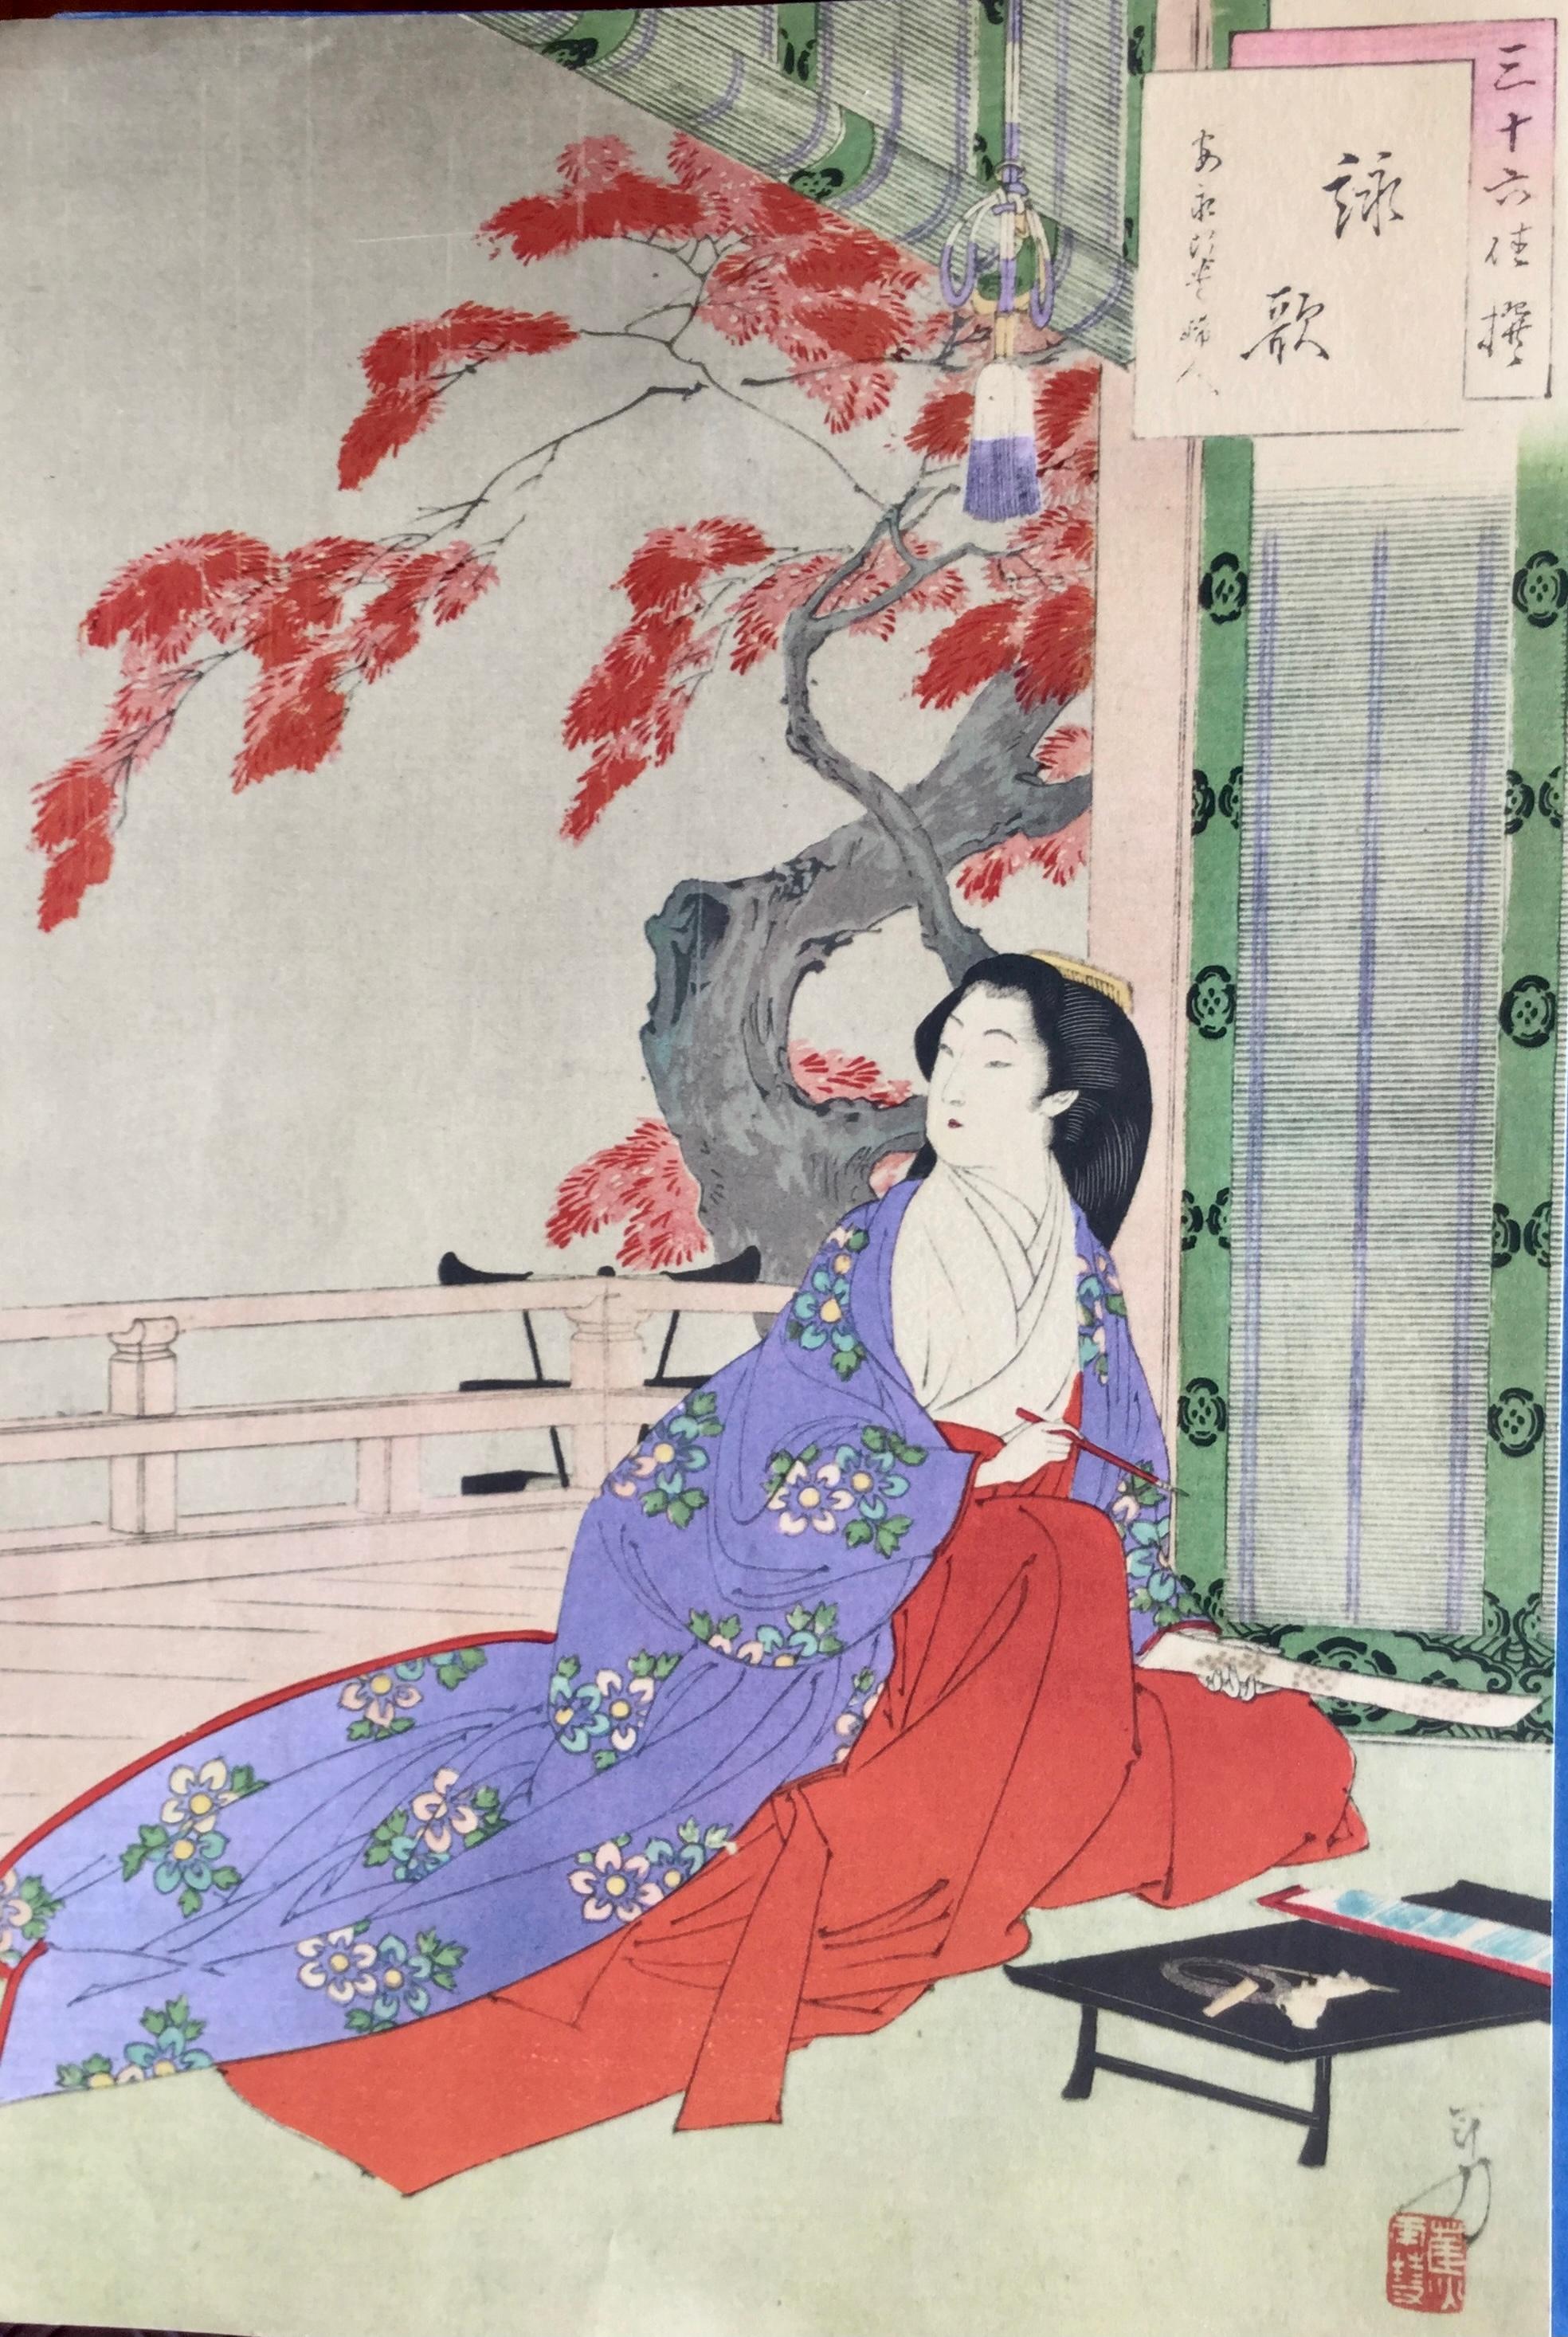 Wichtige Serie von acht farbenfrohen orientalischen Stichen mit ikonischen Szenen des japanischen Lebens.
Sie sind das Werk großer Künstler:
Mizuno Toshikata (1866-1908) 
Utagawa Toyokuni (japanisch: ?; 1769 in Edo - 24. Februar 1825 in Edo)

Jedes